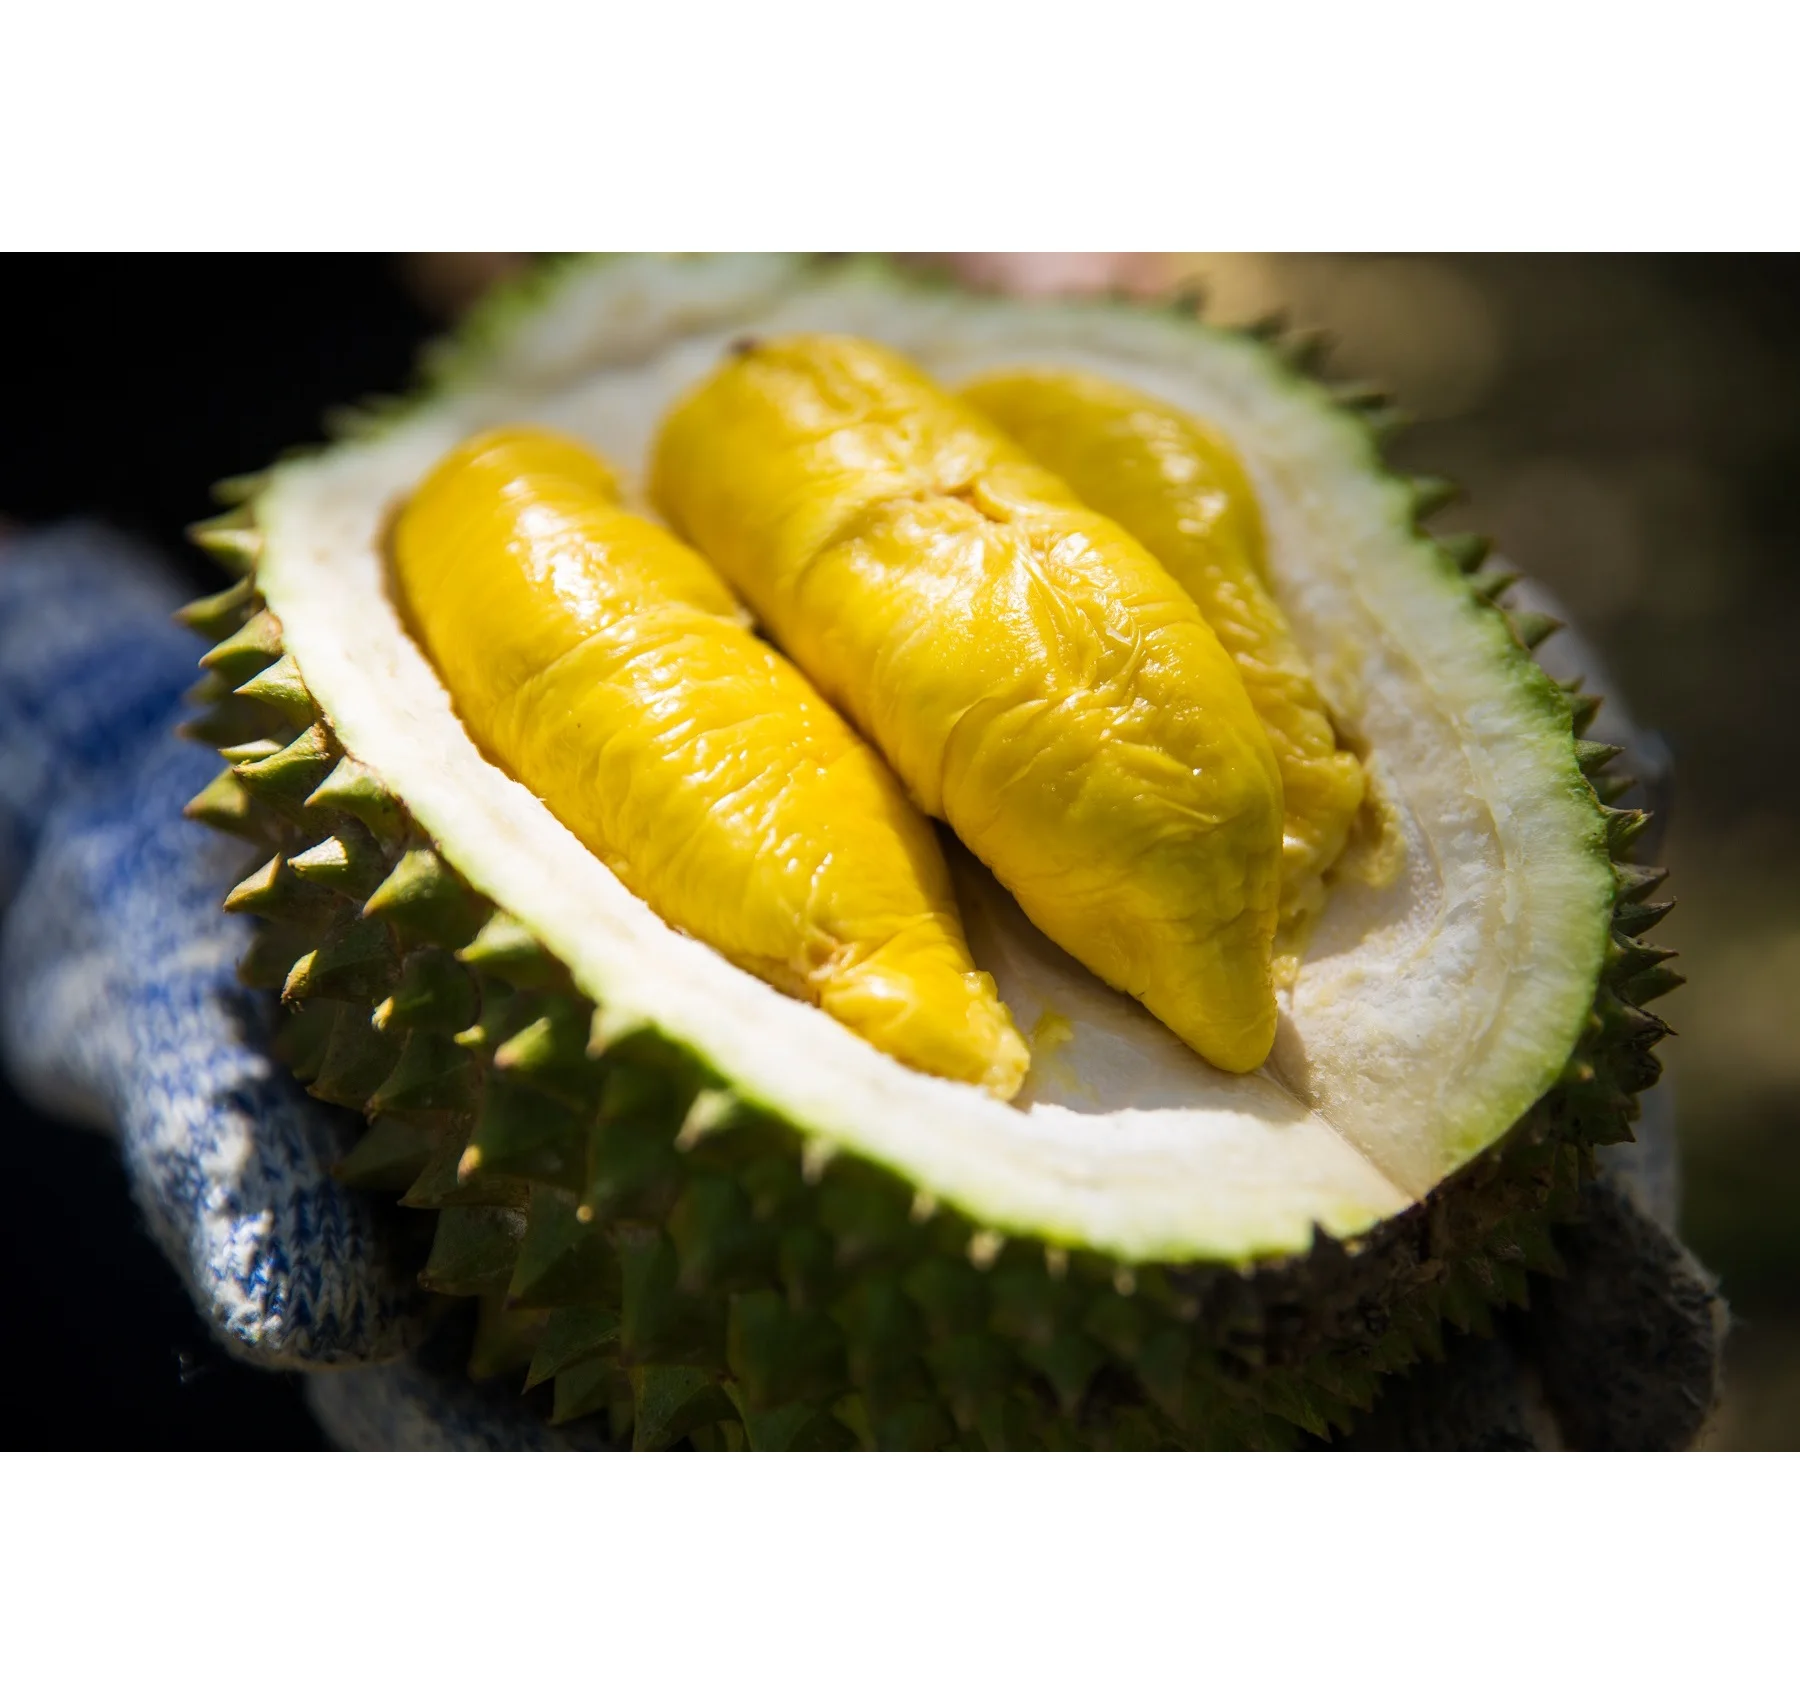 Durian musang king price